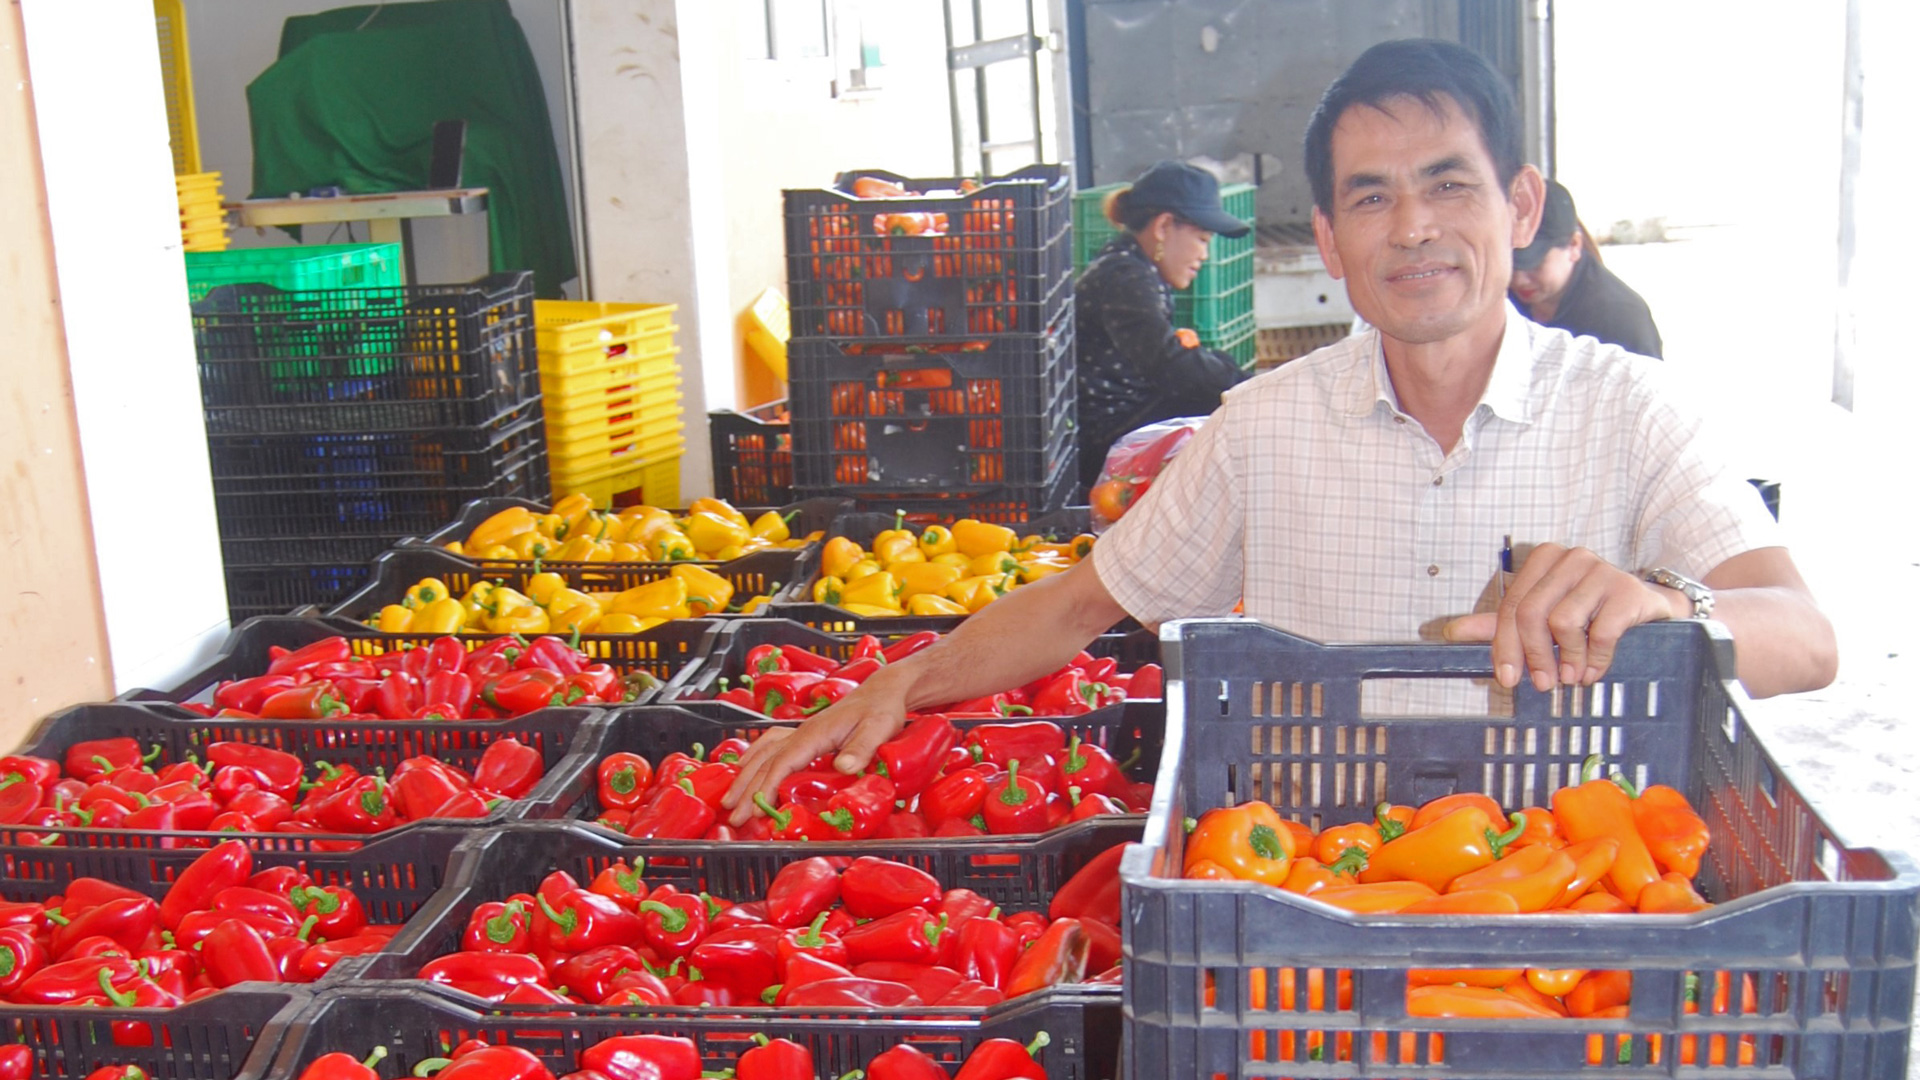 HTX Dịch vụ nông nghiệp tổng hợp An Phú, xã Hiệp An, huyện Đức Trọng 
đã và đang làm cầu nối tiêu thụ rau, củ, quả của nông dân đến hệ thống siêu thị trong nước